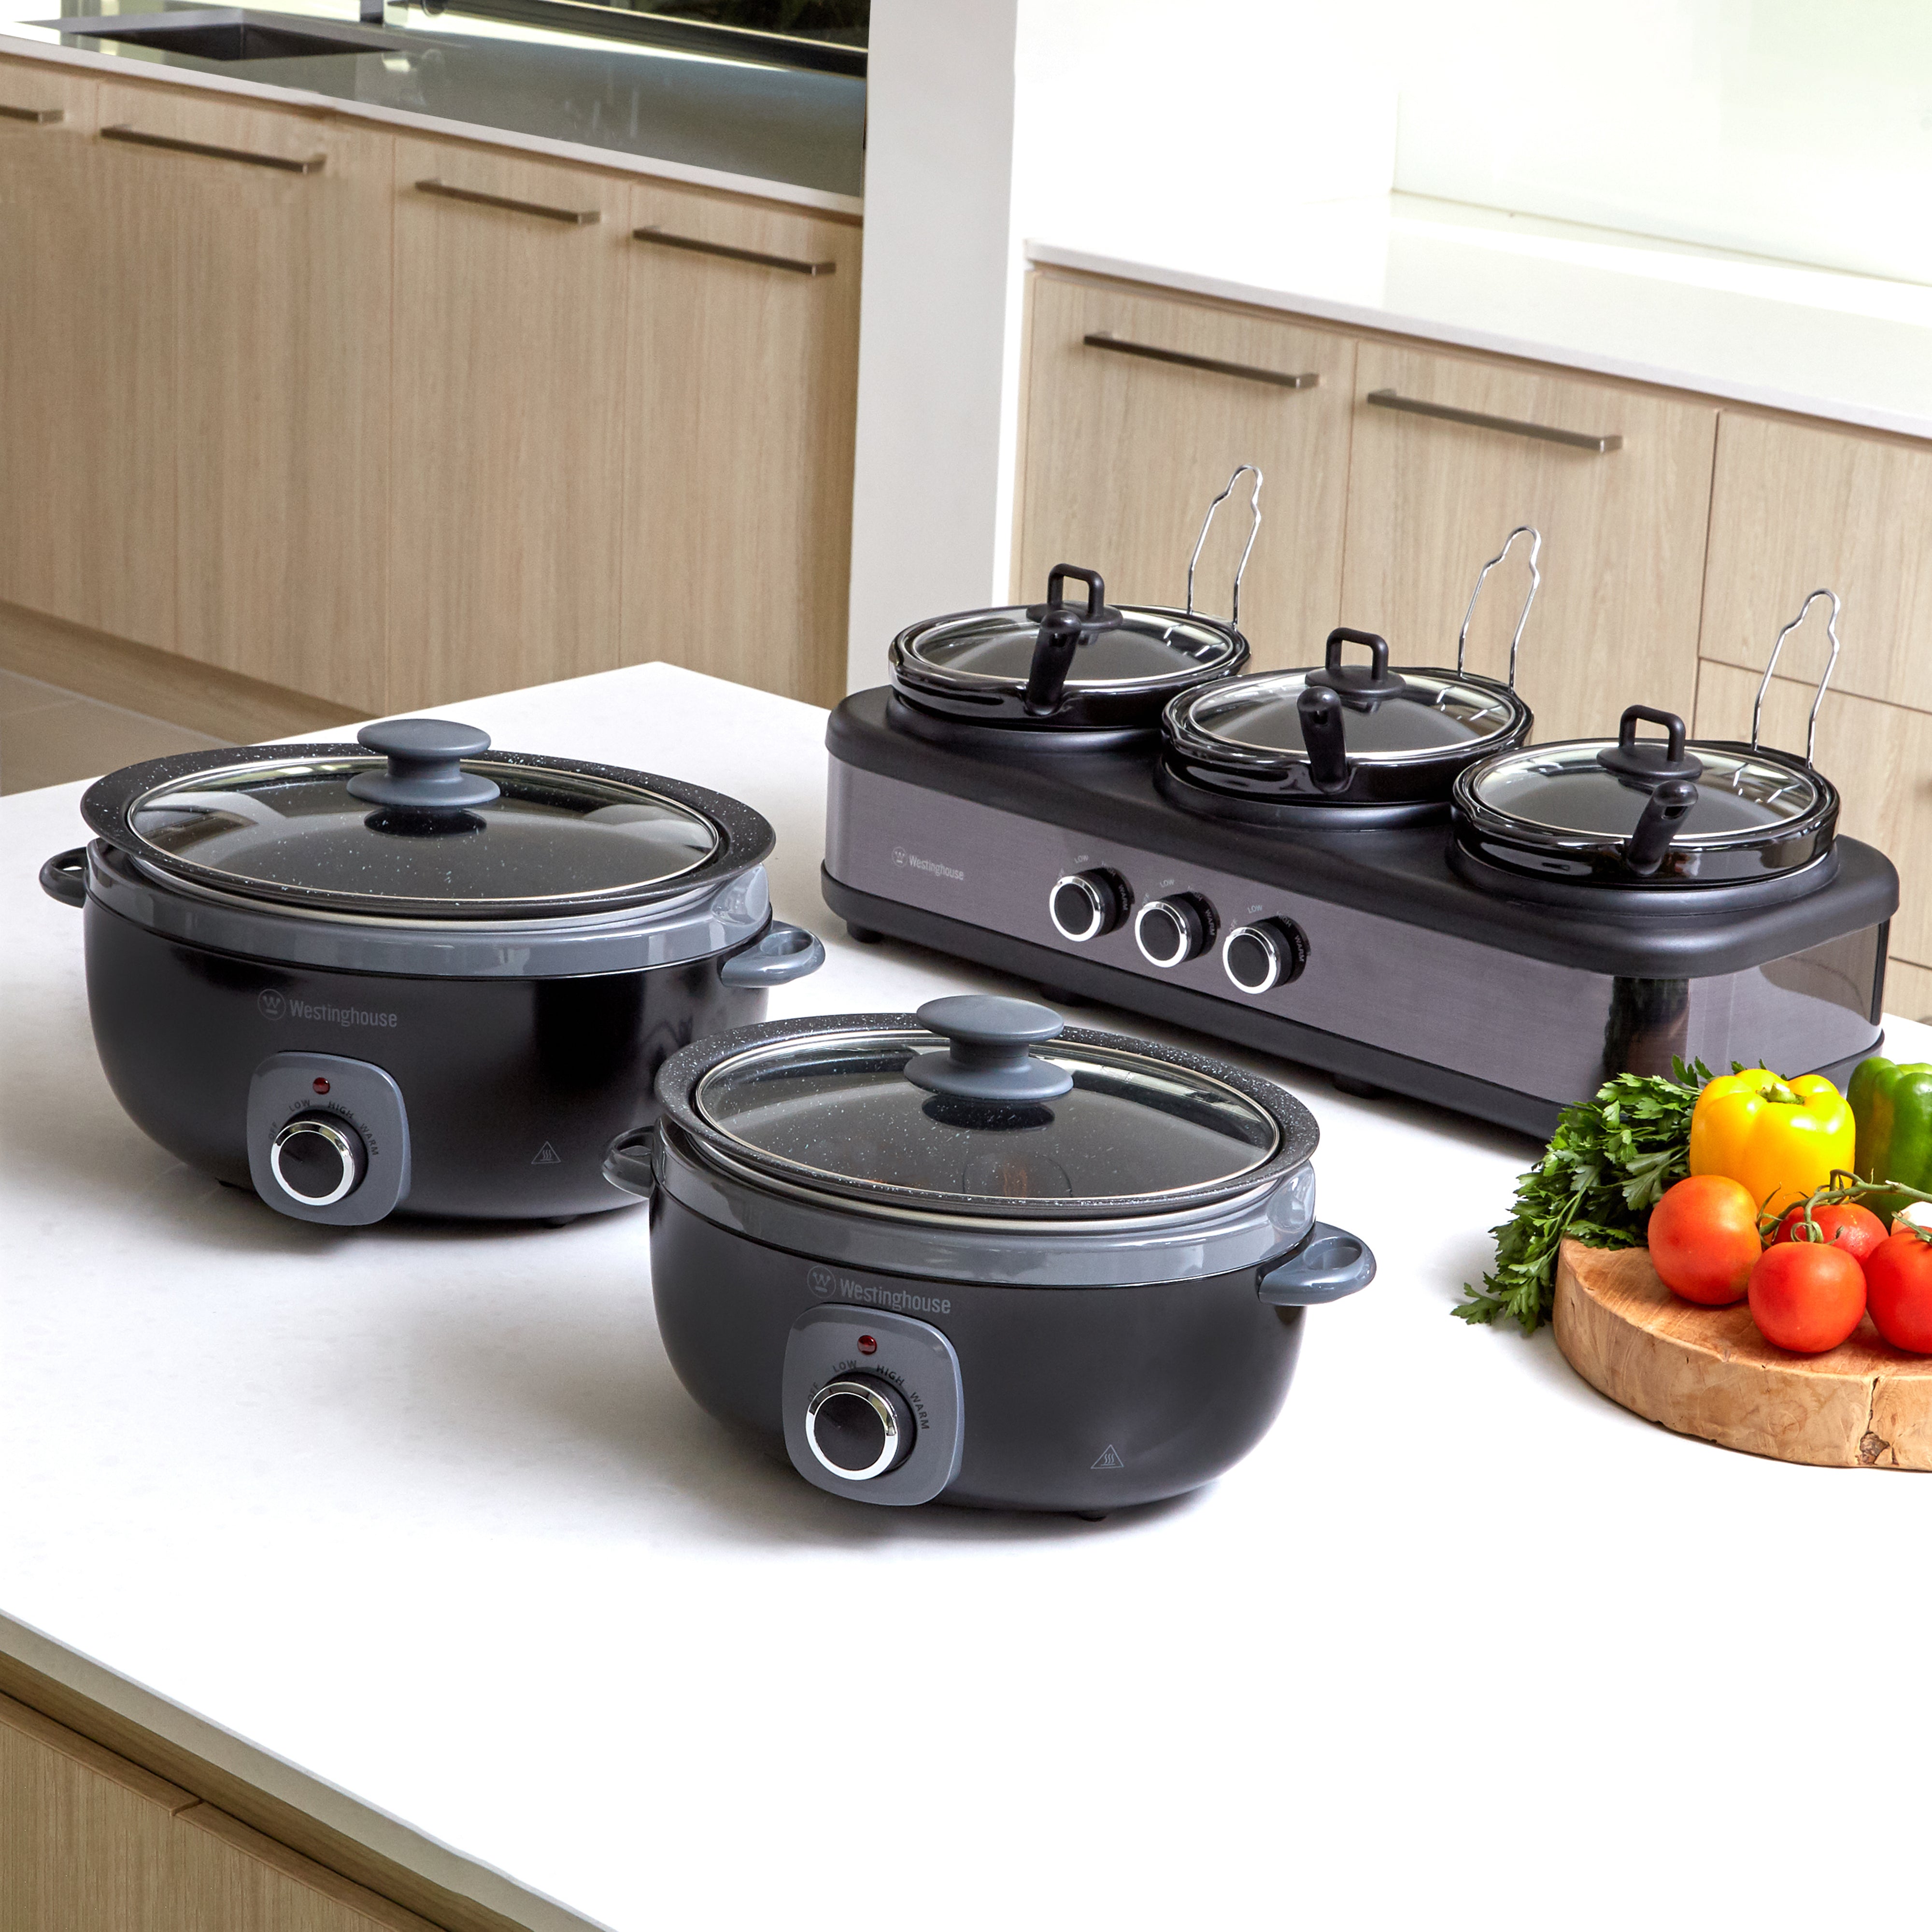 Westinghouse Slow Cooker 3 x 2.5L Ceramic Pots Auto Function –